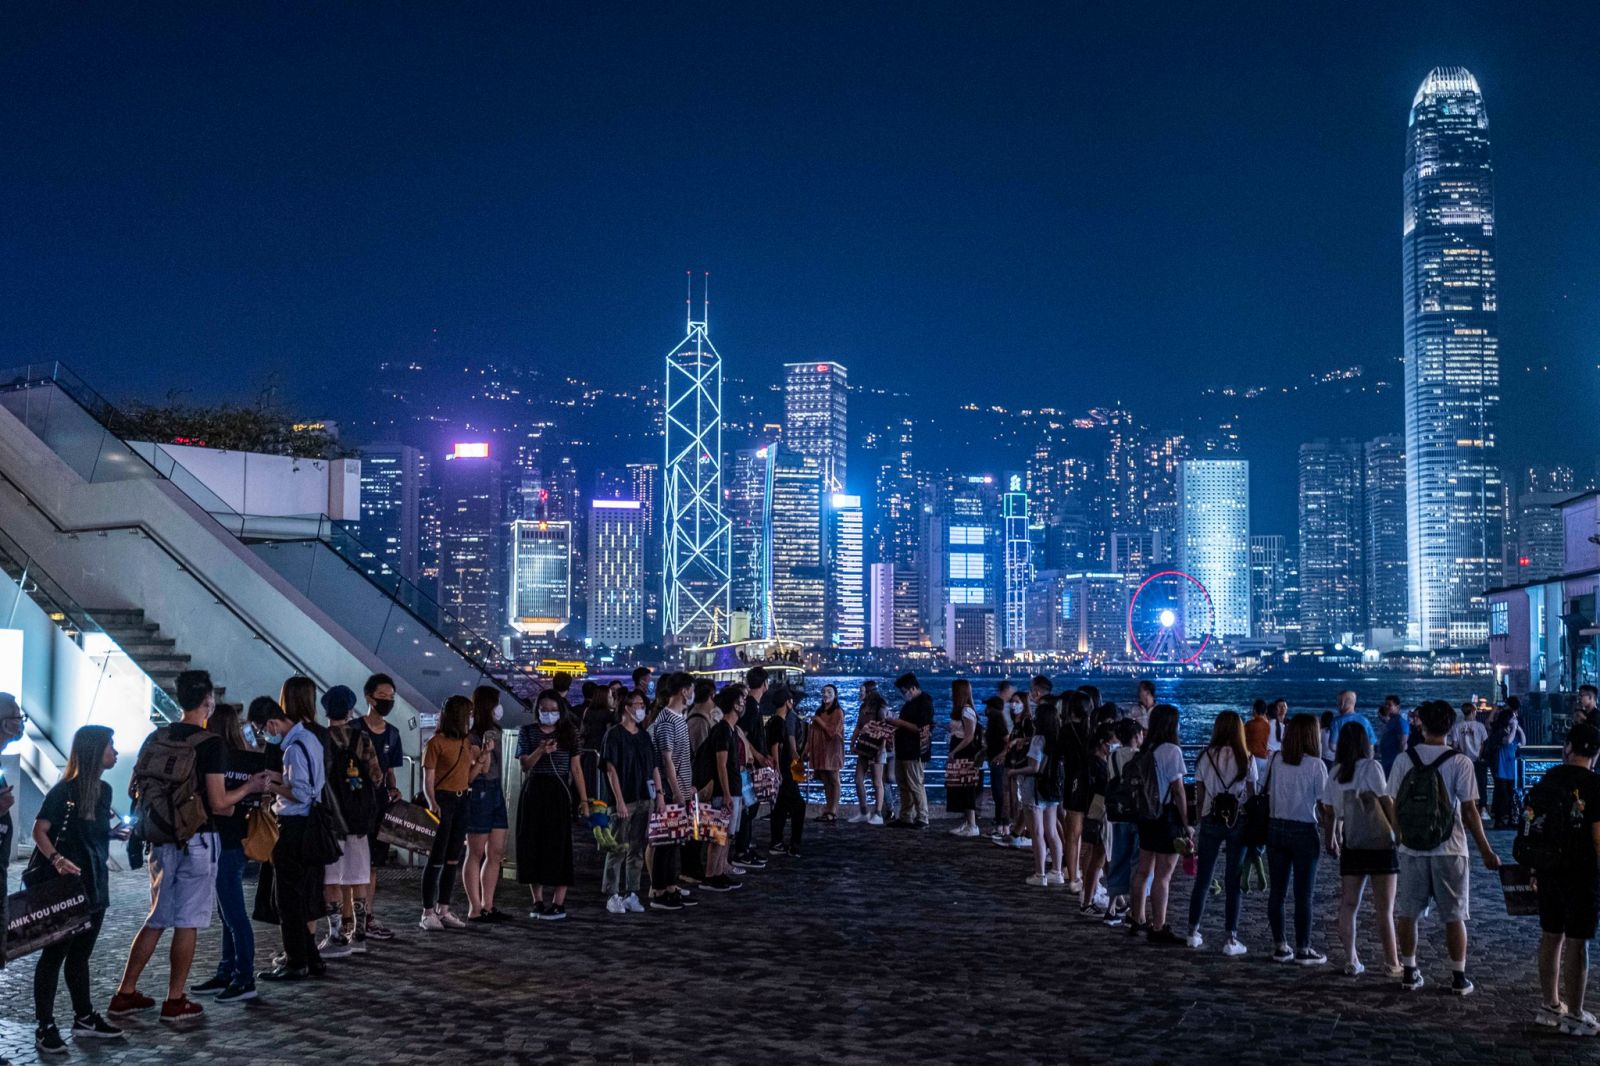 Hồng Kông về đâu khi Trung Quốc lộng quyền?